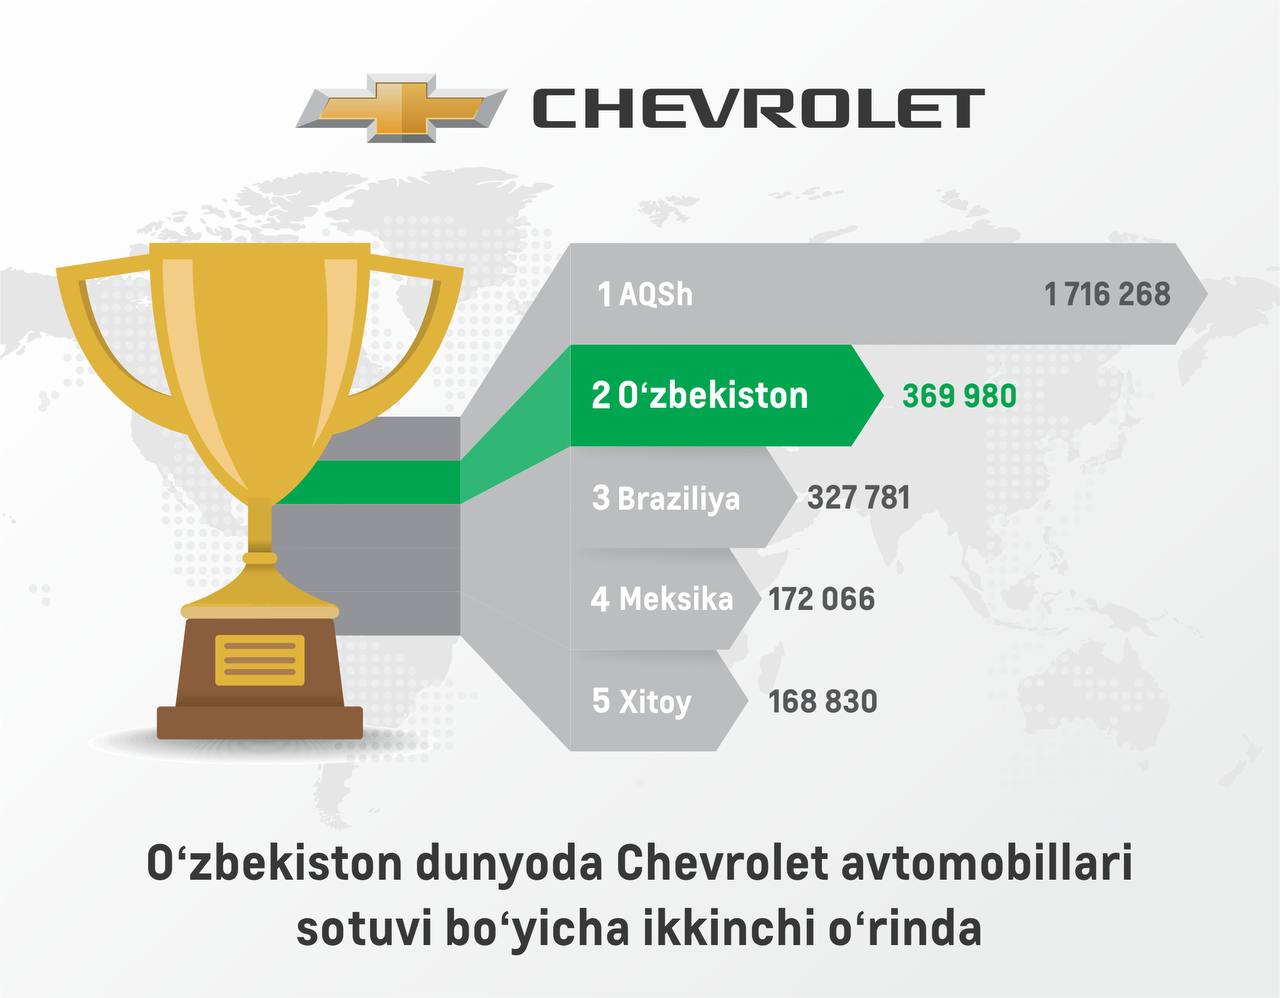 Узбекистан стал вторым крупнейшим рынком Chevrolet в мире после Соединенных Штатов.